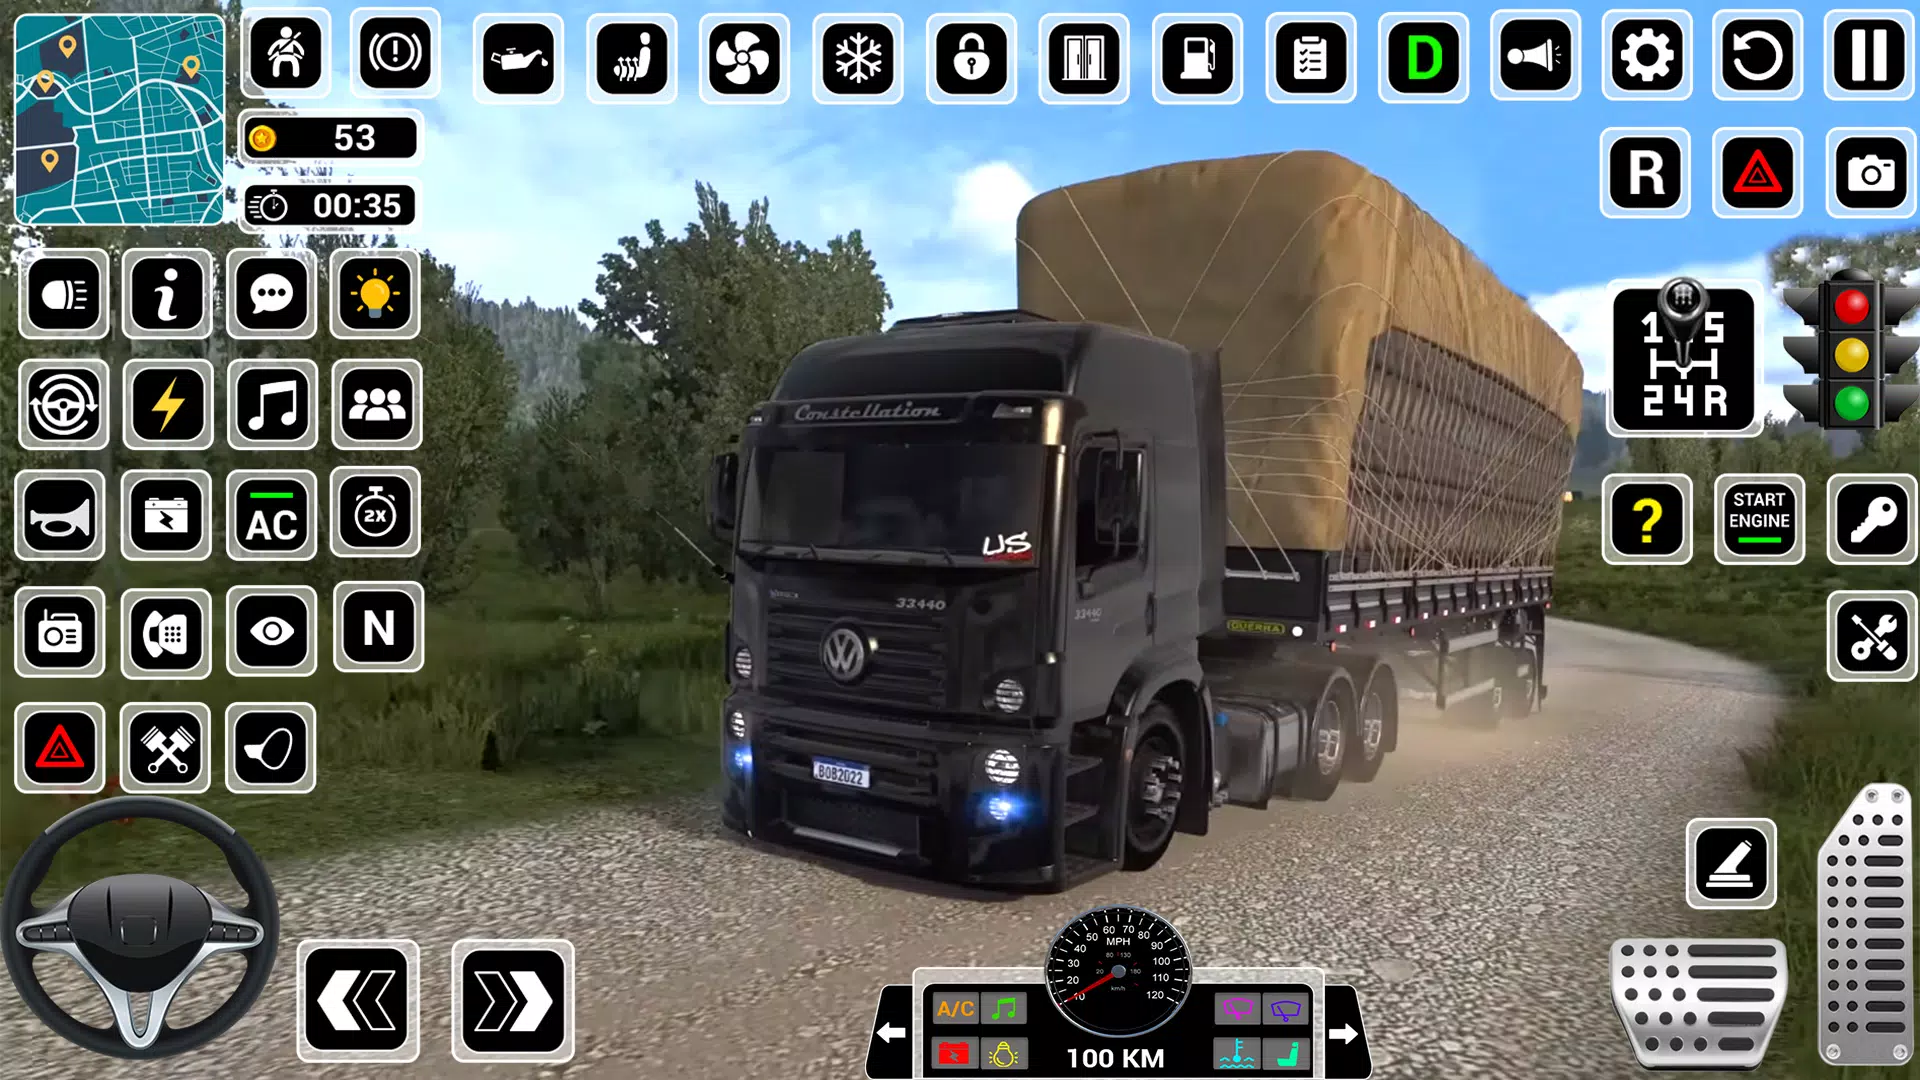 Download do APK de Jogo de caminhão simulador 3D para Android